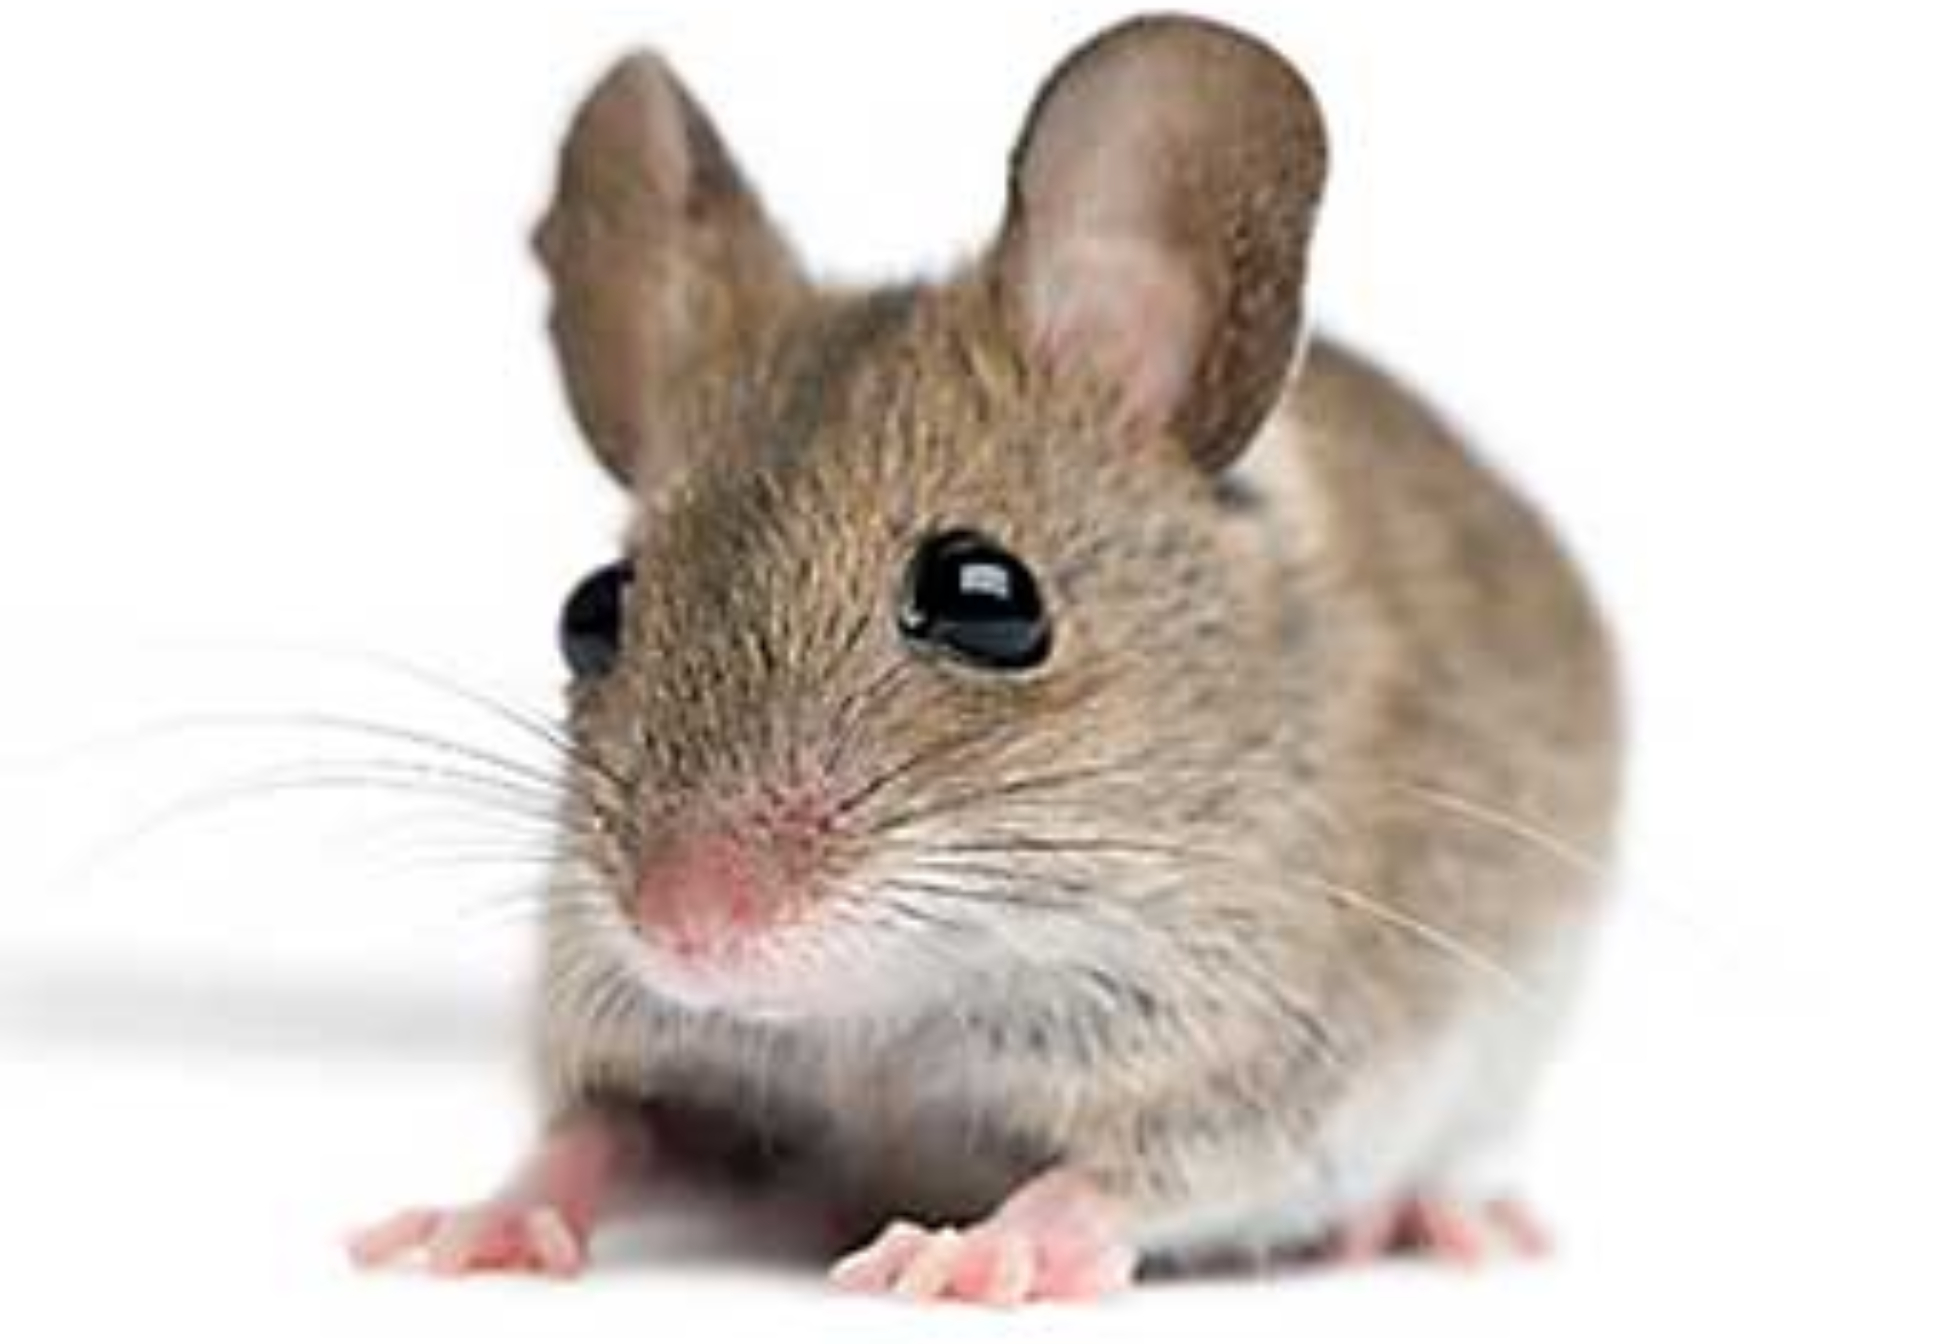 Περιττώματα ποντικού σε ντουλάπια χαλιά και ρούχα: Ο σωστός τρόπος καθαρισμού και πως να διώξετε τα ποντίκια από το σπίτι